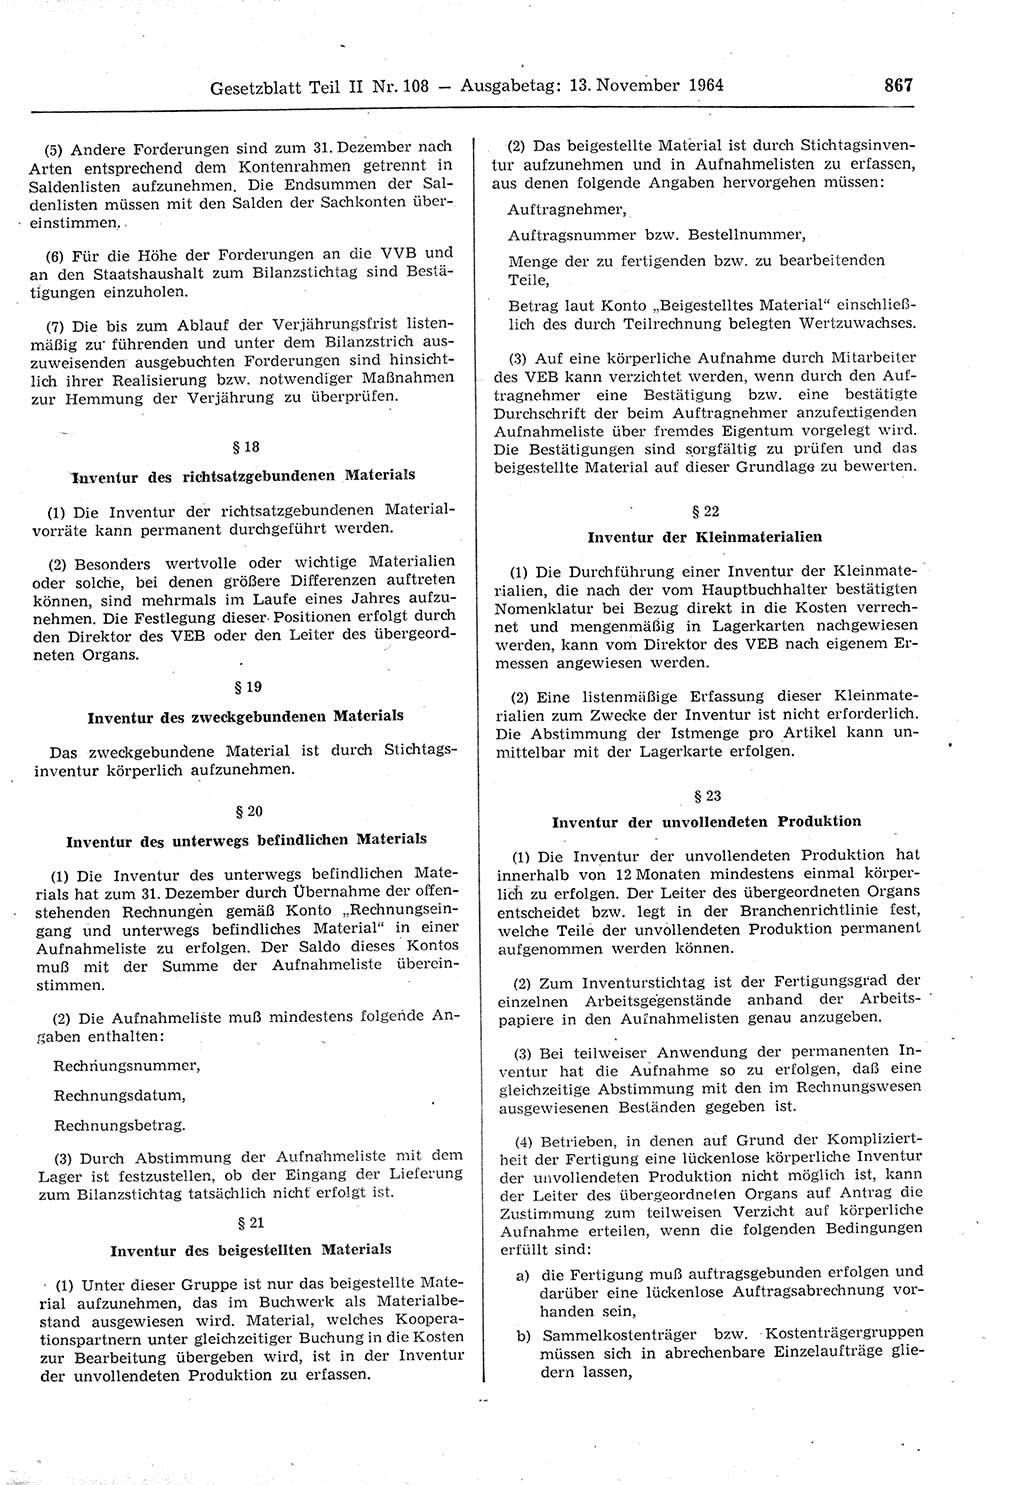 Gesetzblatt (GBl.) der Deutschen Demokratischen Republik (DDR) Teil ⅠⅠ 1964, Seite 867 (GBl. DDR ⅠⅠ 1964, S. 867)